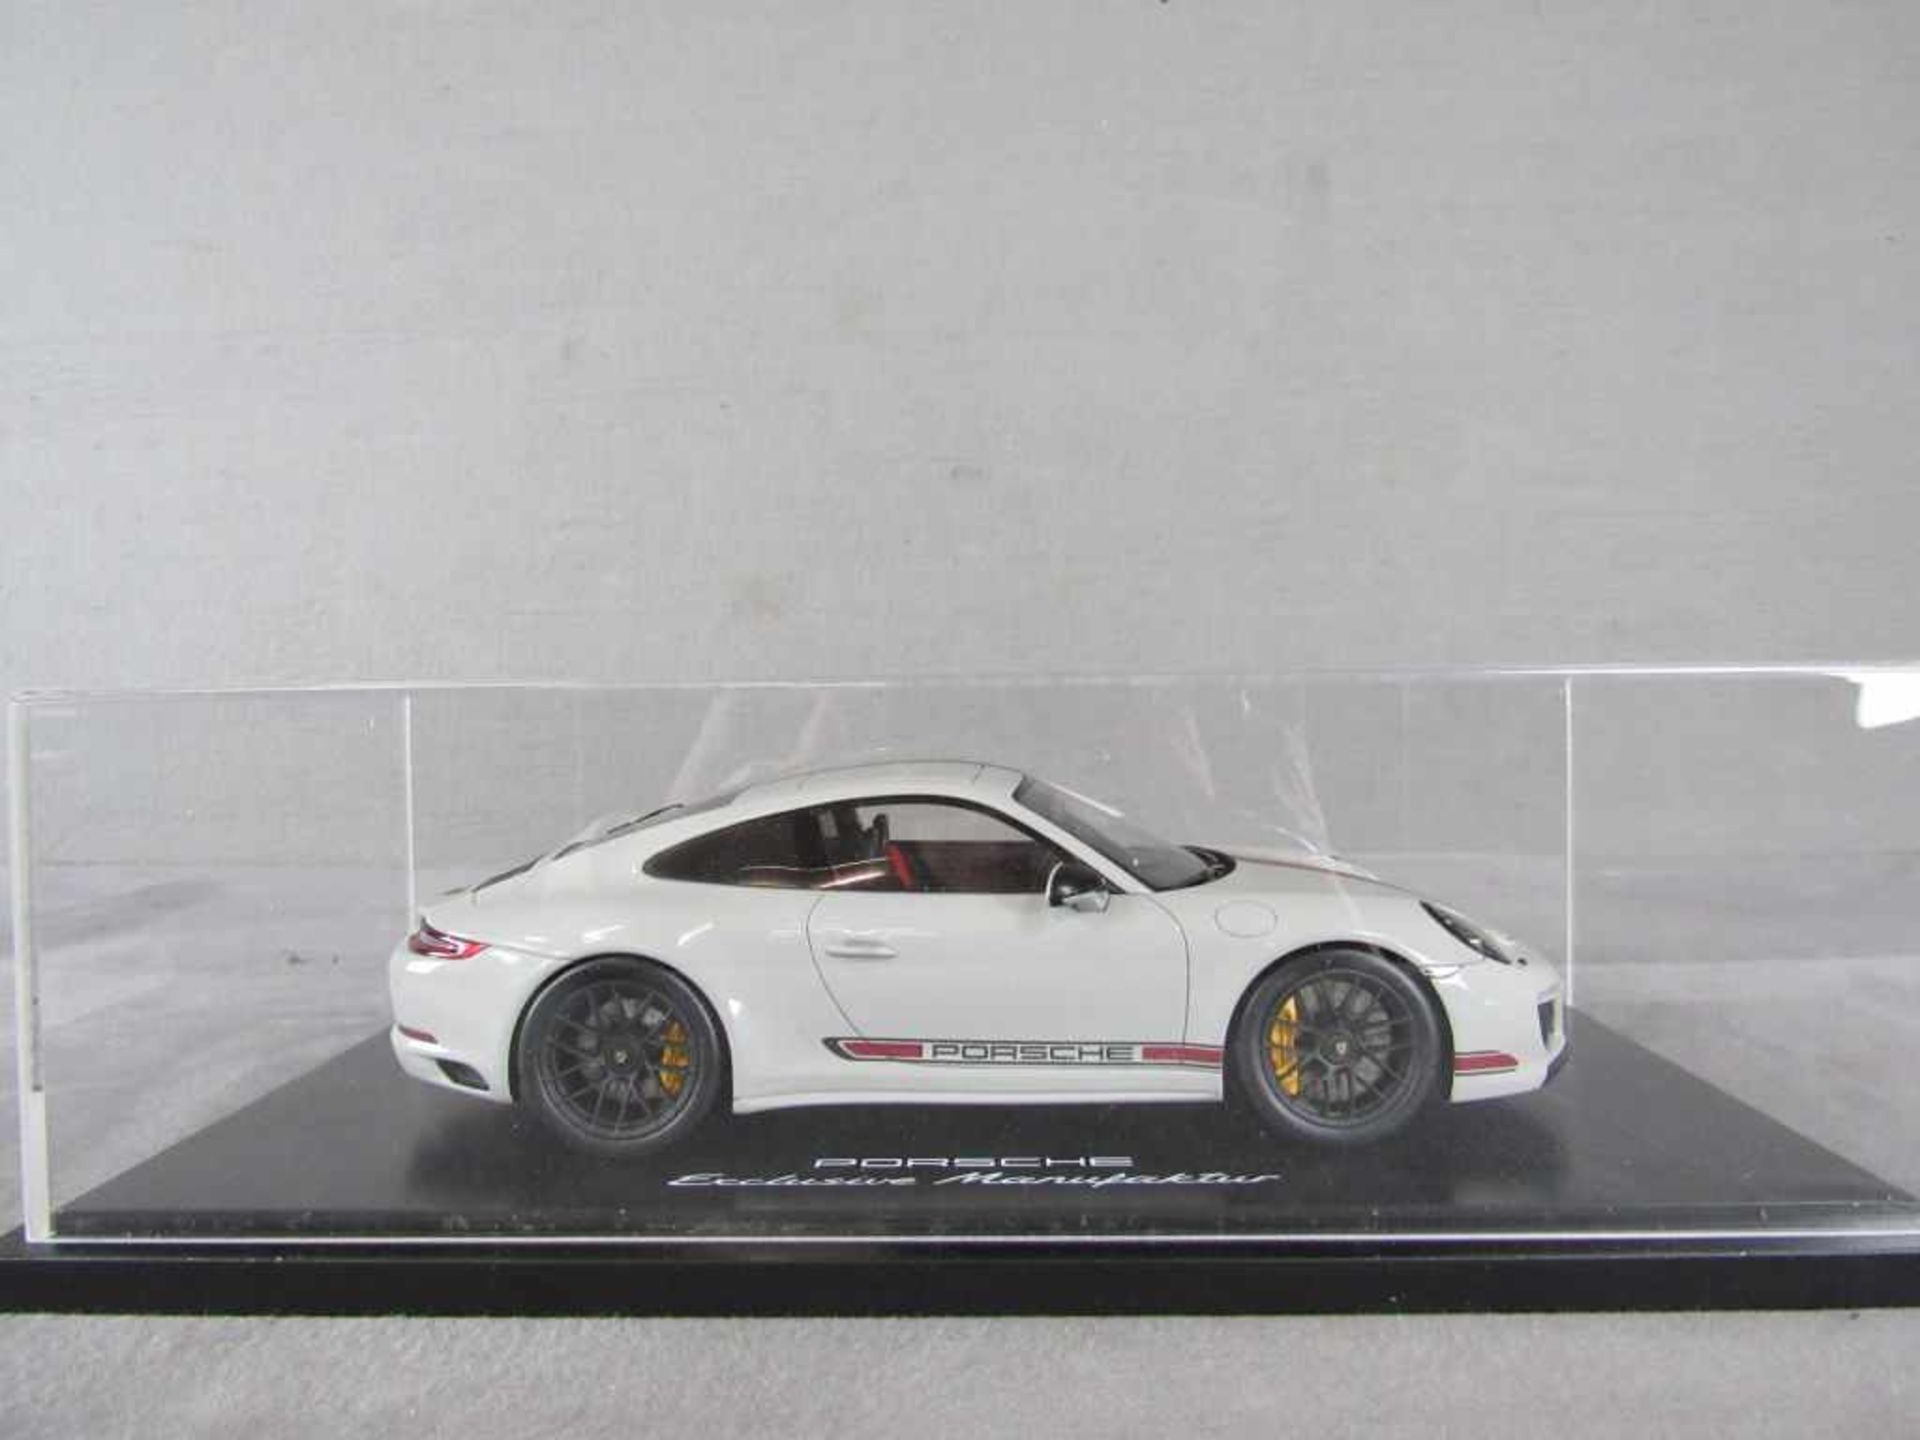 3Modelauto Porsche Original Porsche-Modell im Maßstab 1:18 in original Box unbespieltes